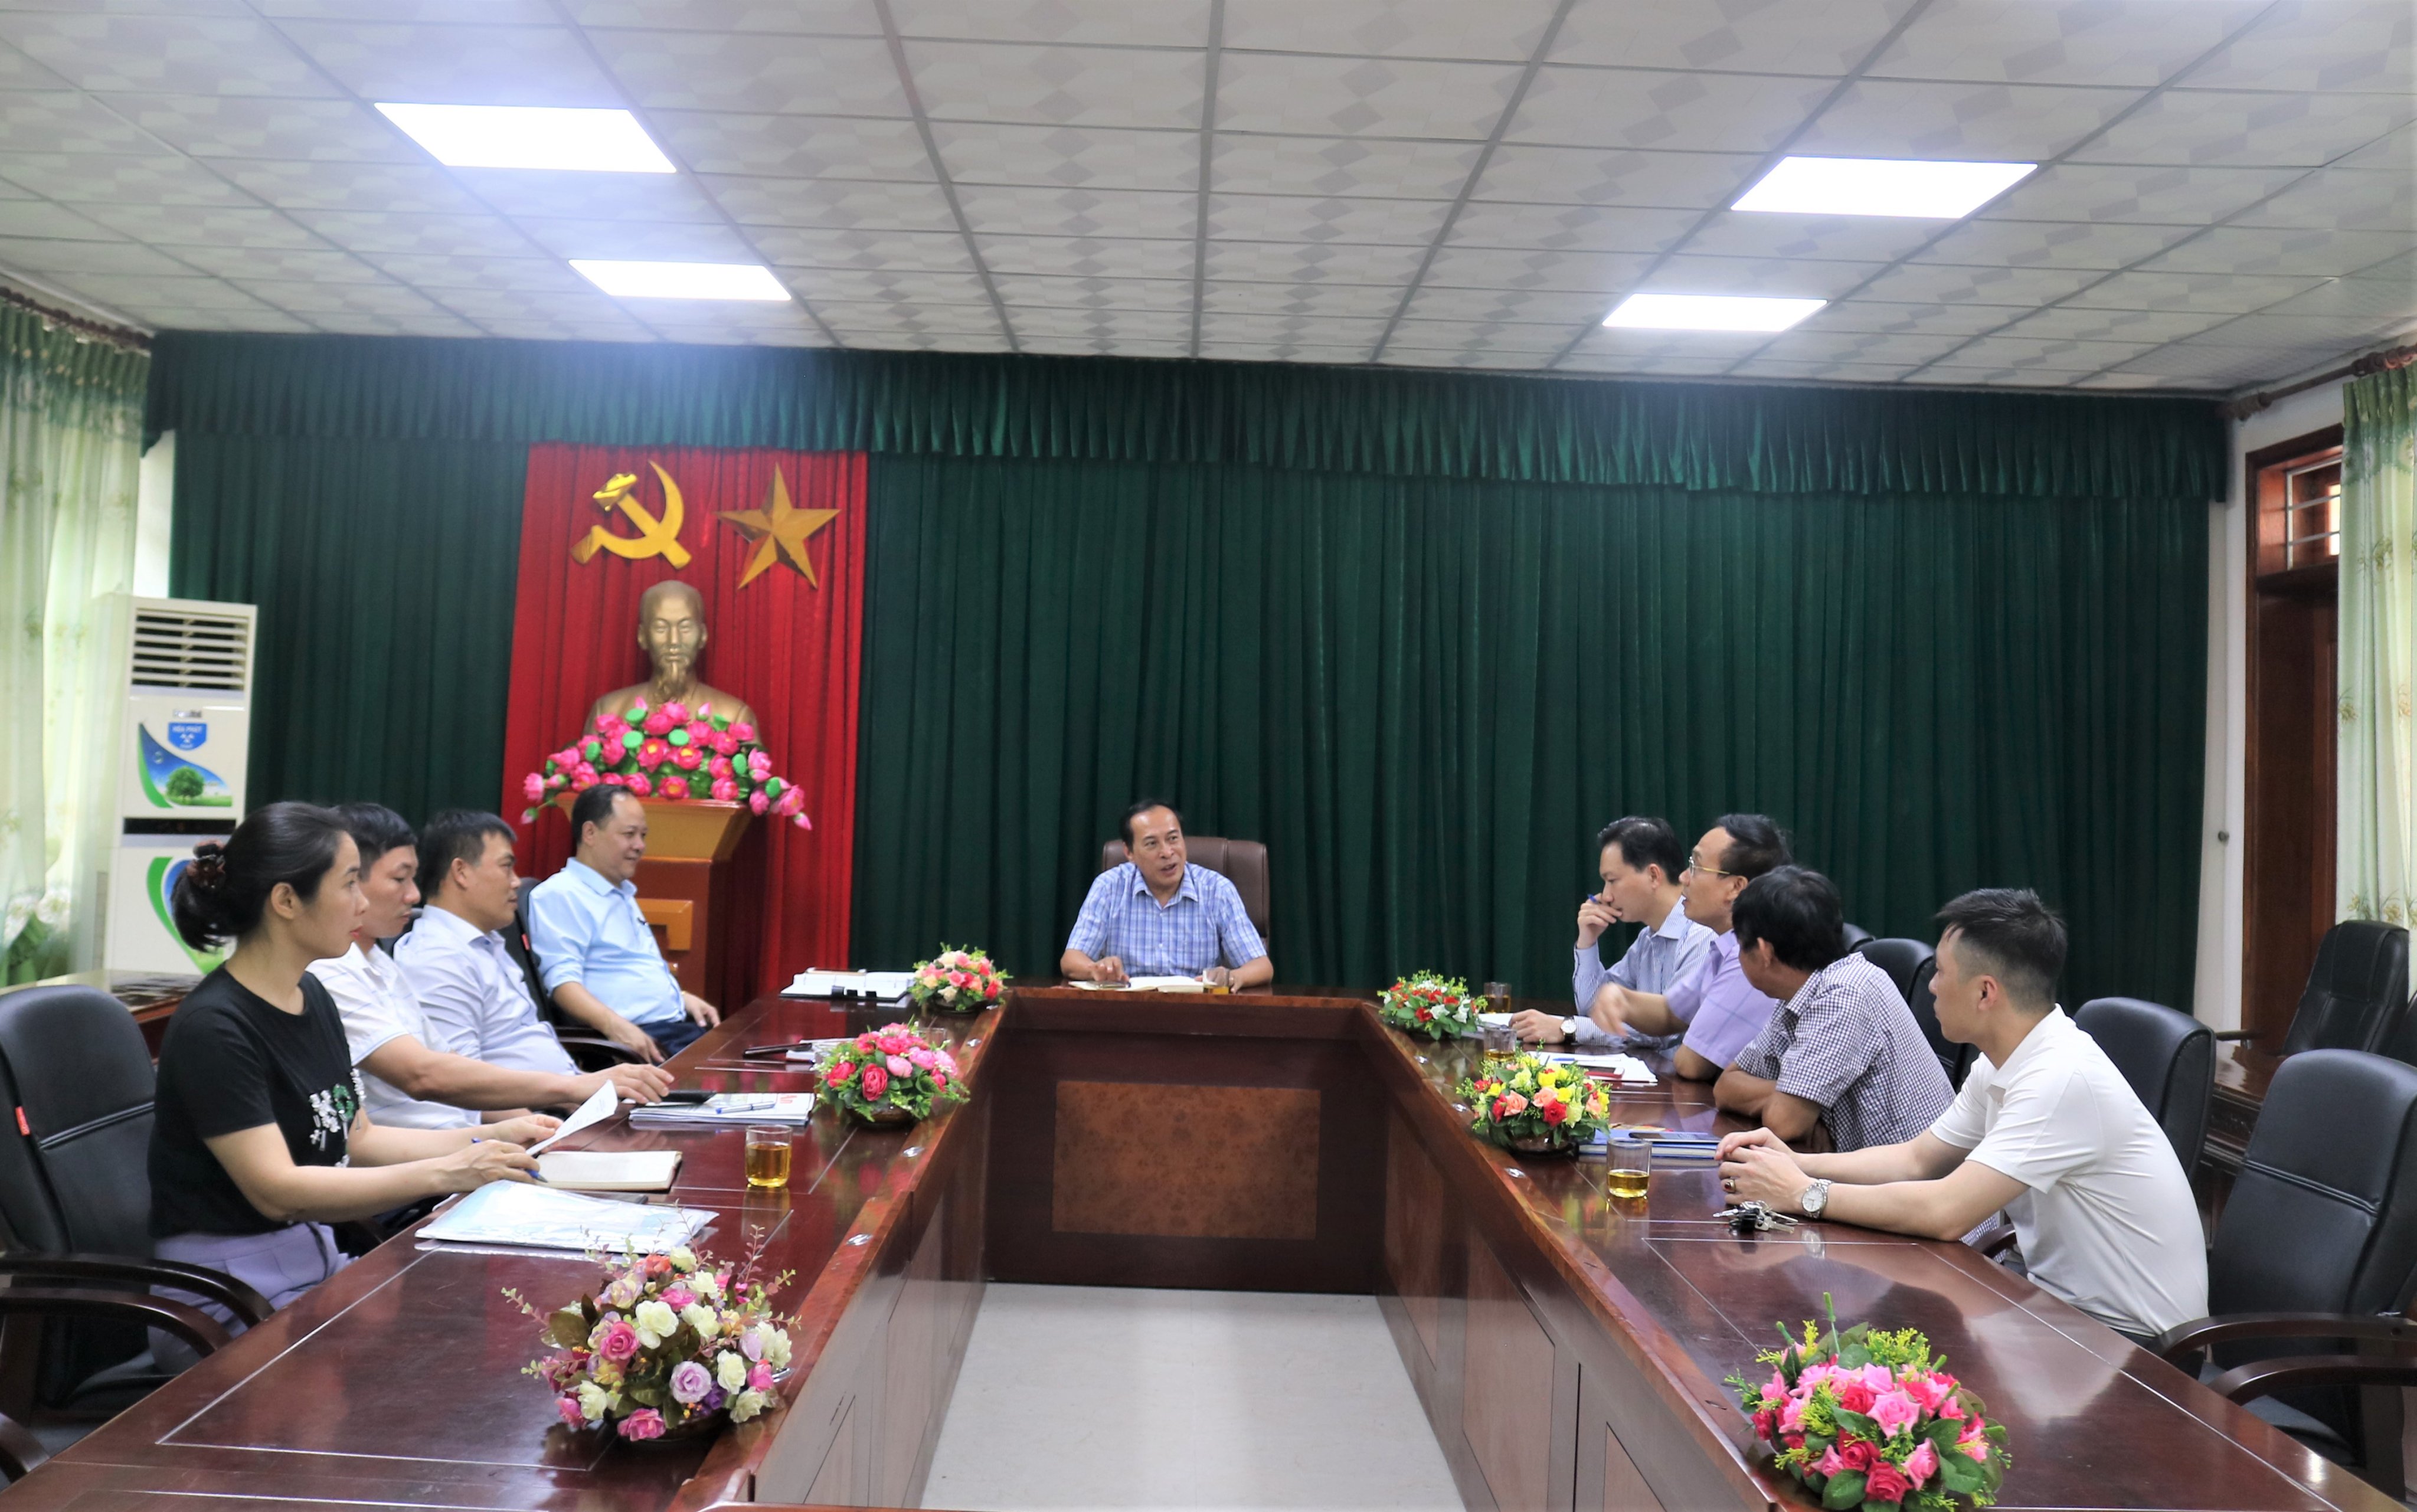  Hội đồng trường Trường Cao đẳng Việt – Đức Nghệ An tổ chức phiên họp thường kỳ quý 2 năm 2022